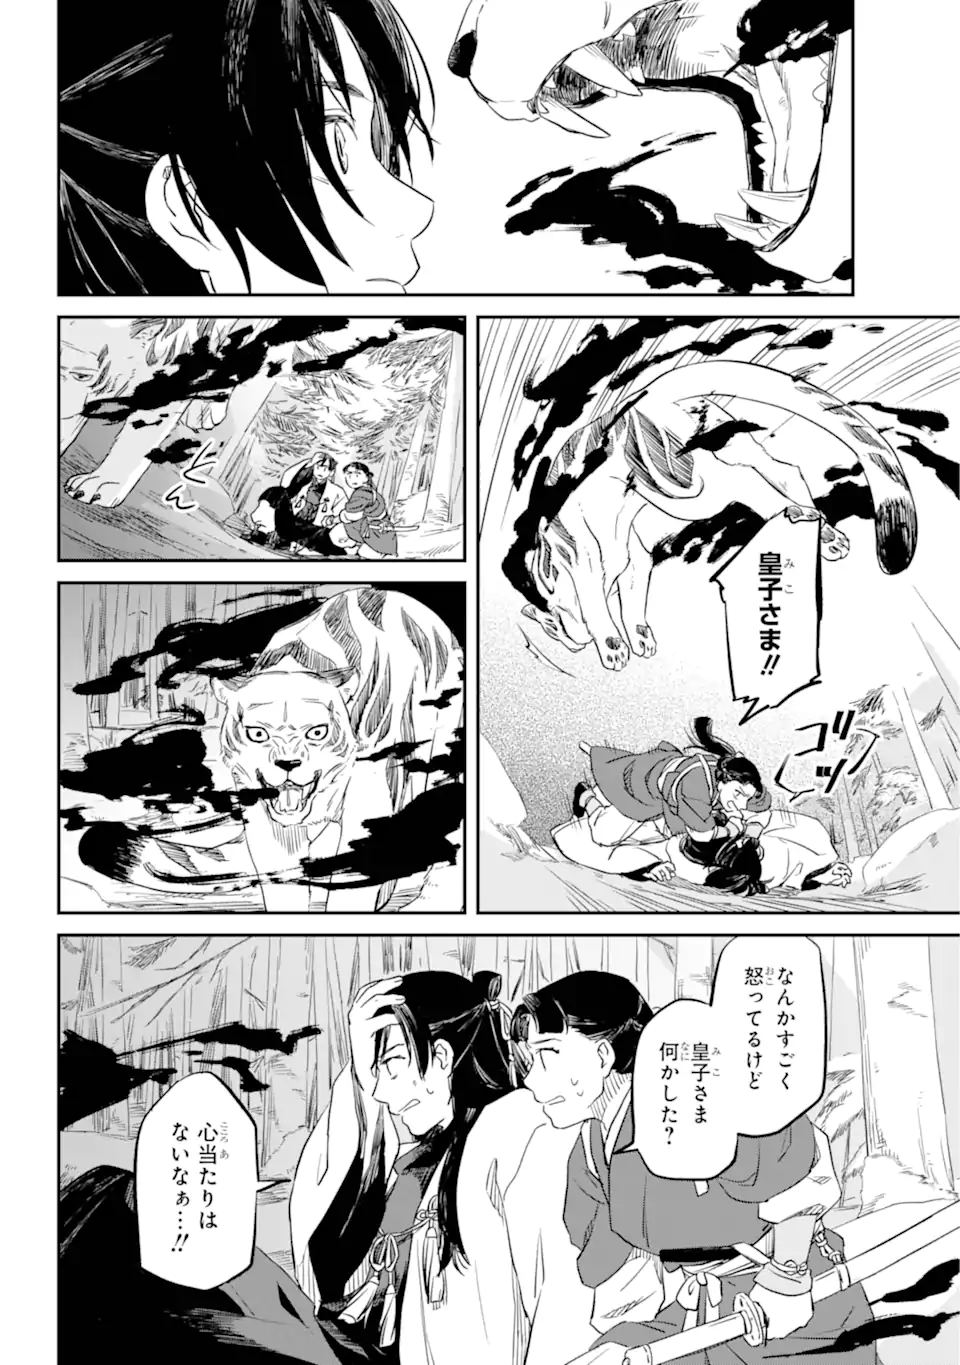 Ryuujin no Musume - Chapter 1.3 - Page 1